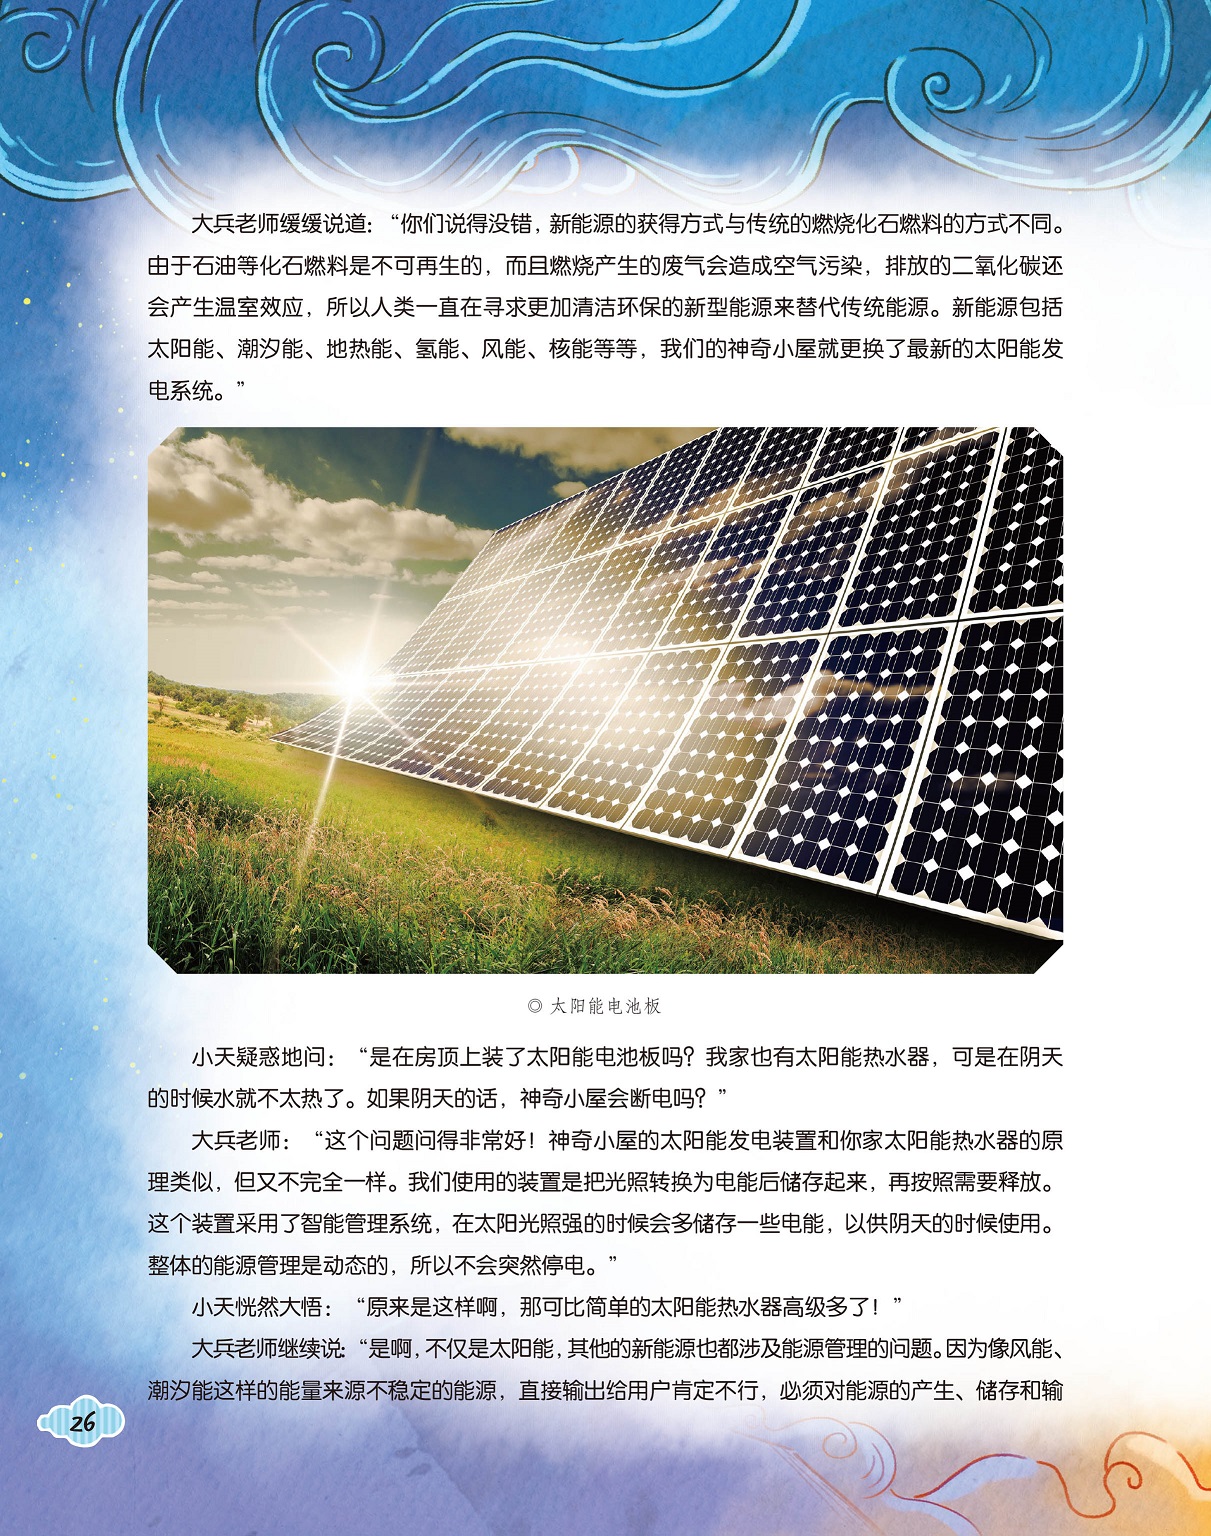 太阳能发电系统,能源管理问题